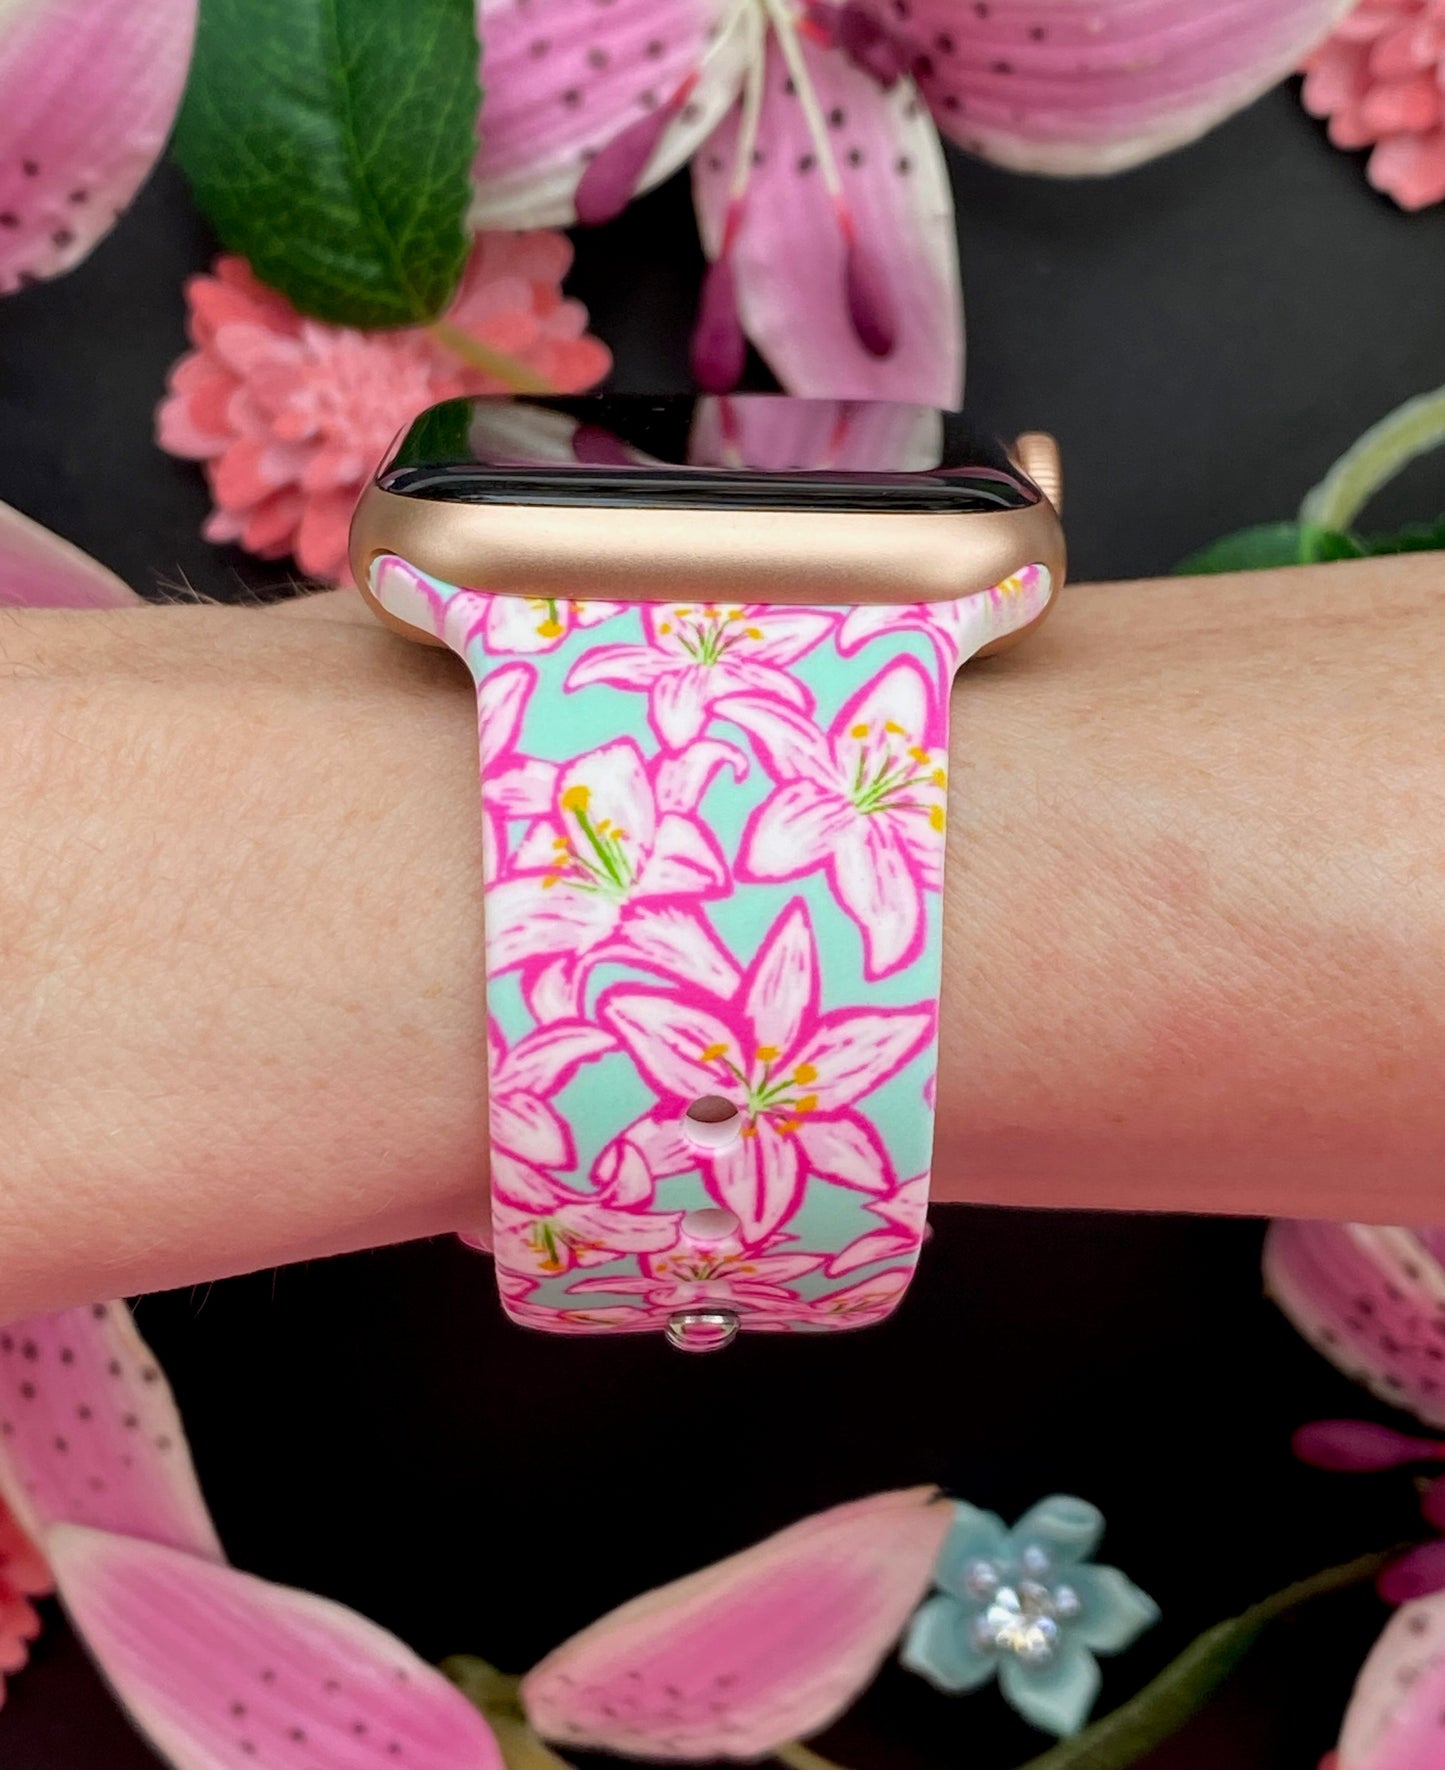 Spring Floral Bundle Apple Watch Bands